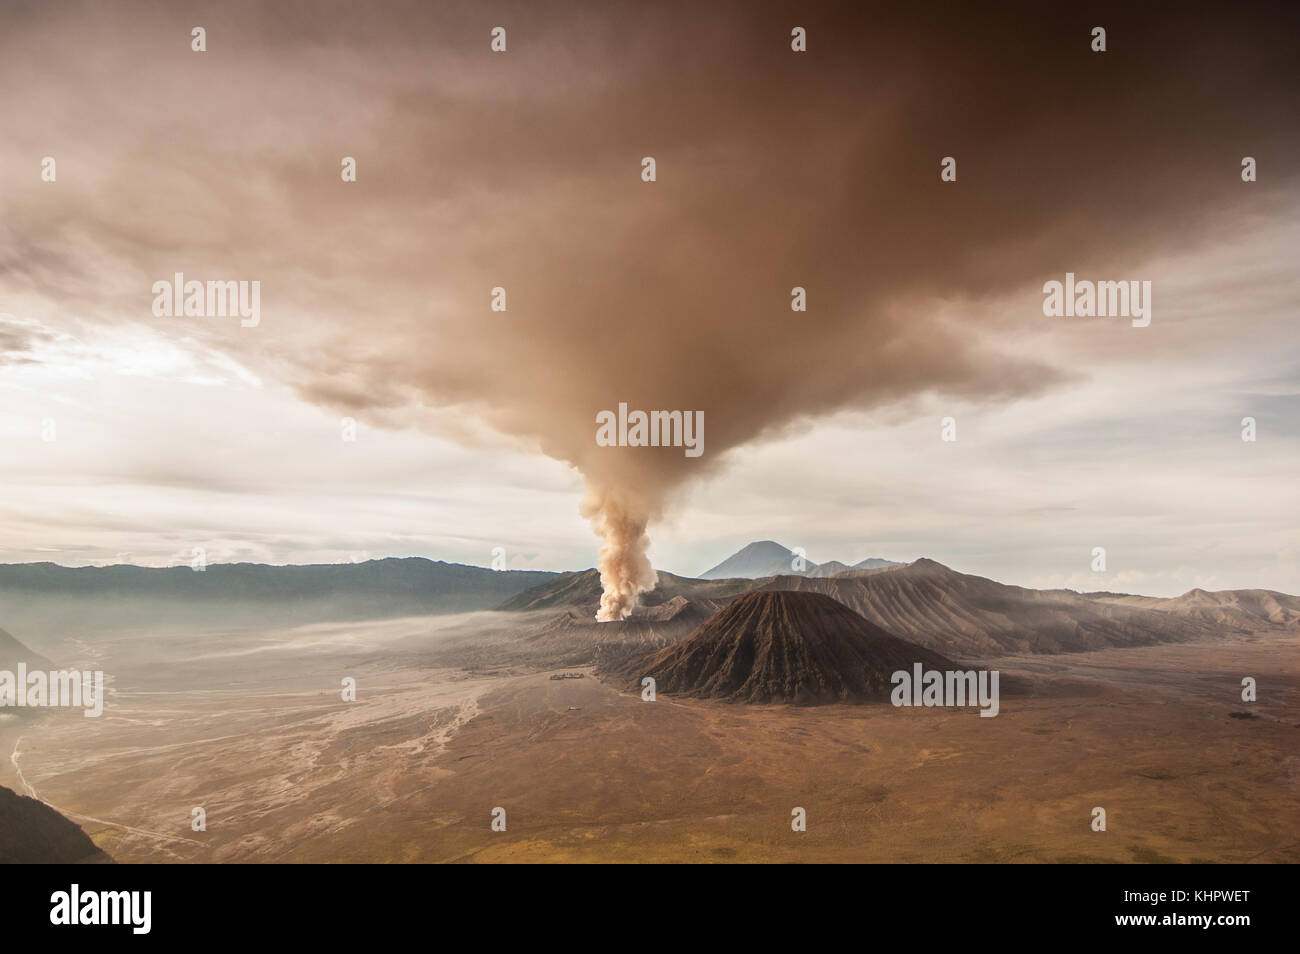 Erupción del Monte Bromo. ceniza volcánica que cubre el cielo durante la última erupción en 2010. El color del cielo y la tierra cambió dramáticamente. Foto de stock